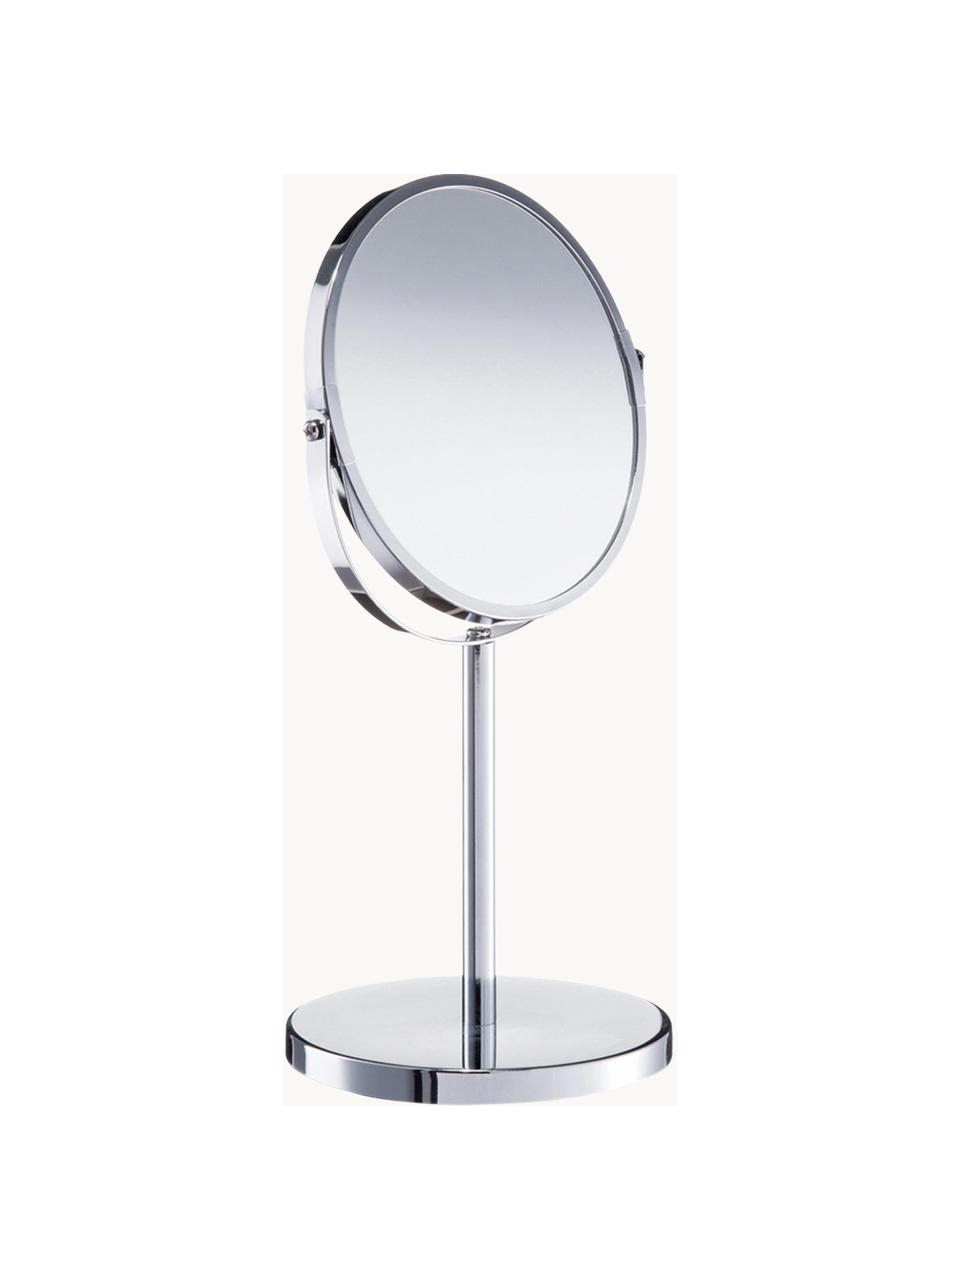 Runder Kosmetikspiegel Flip mit Vergrösserung und Metallsockel, Rahmen: Metall, verchromt, Spiegelfläche: Spiegelglas, Silberfarben, Ø 17 x H 35 cm